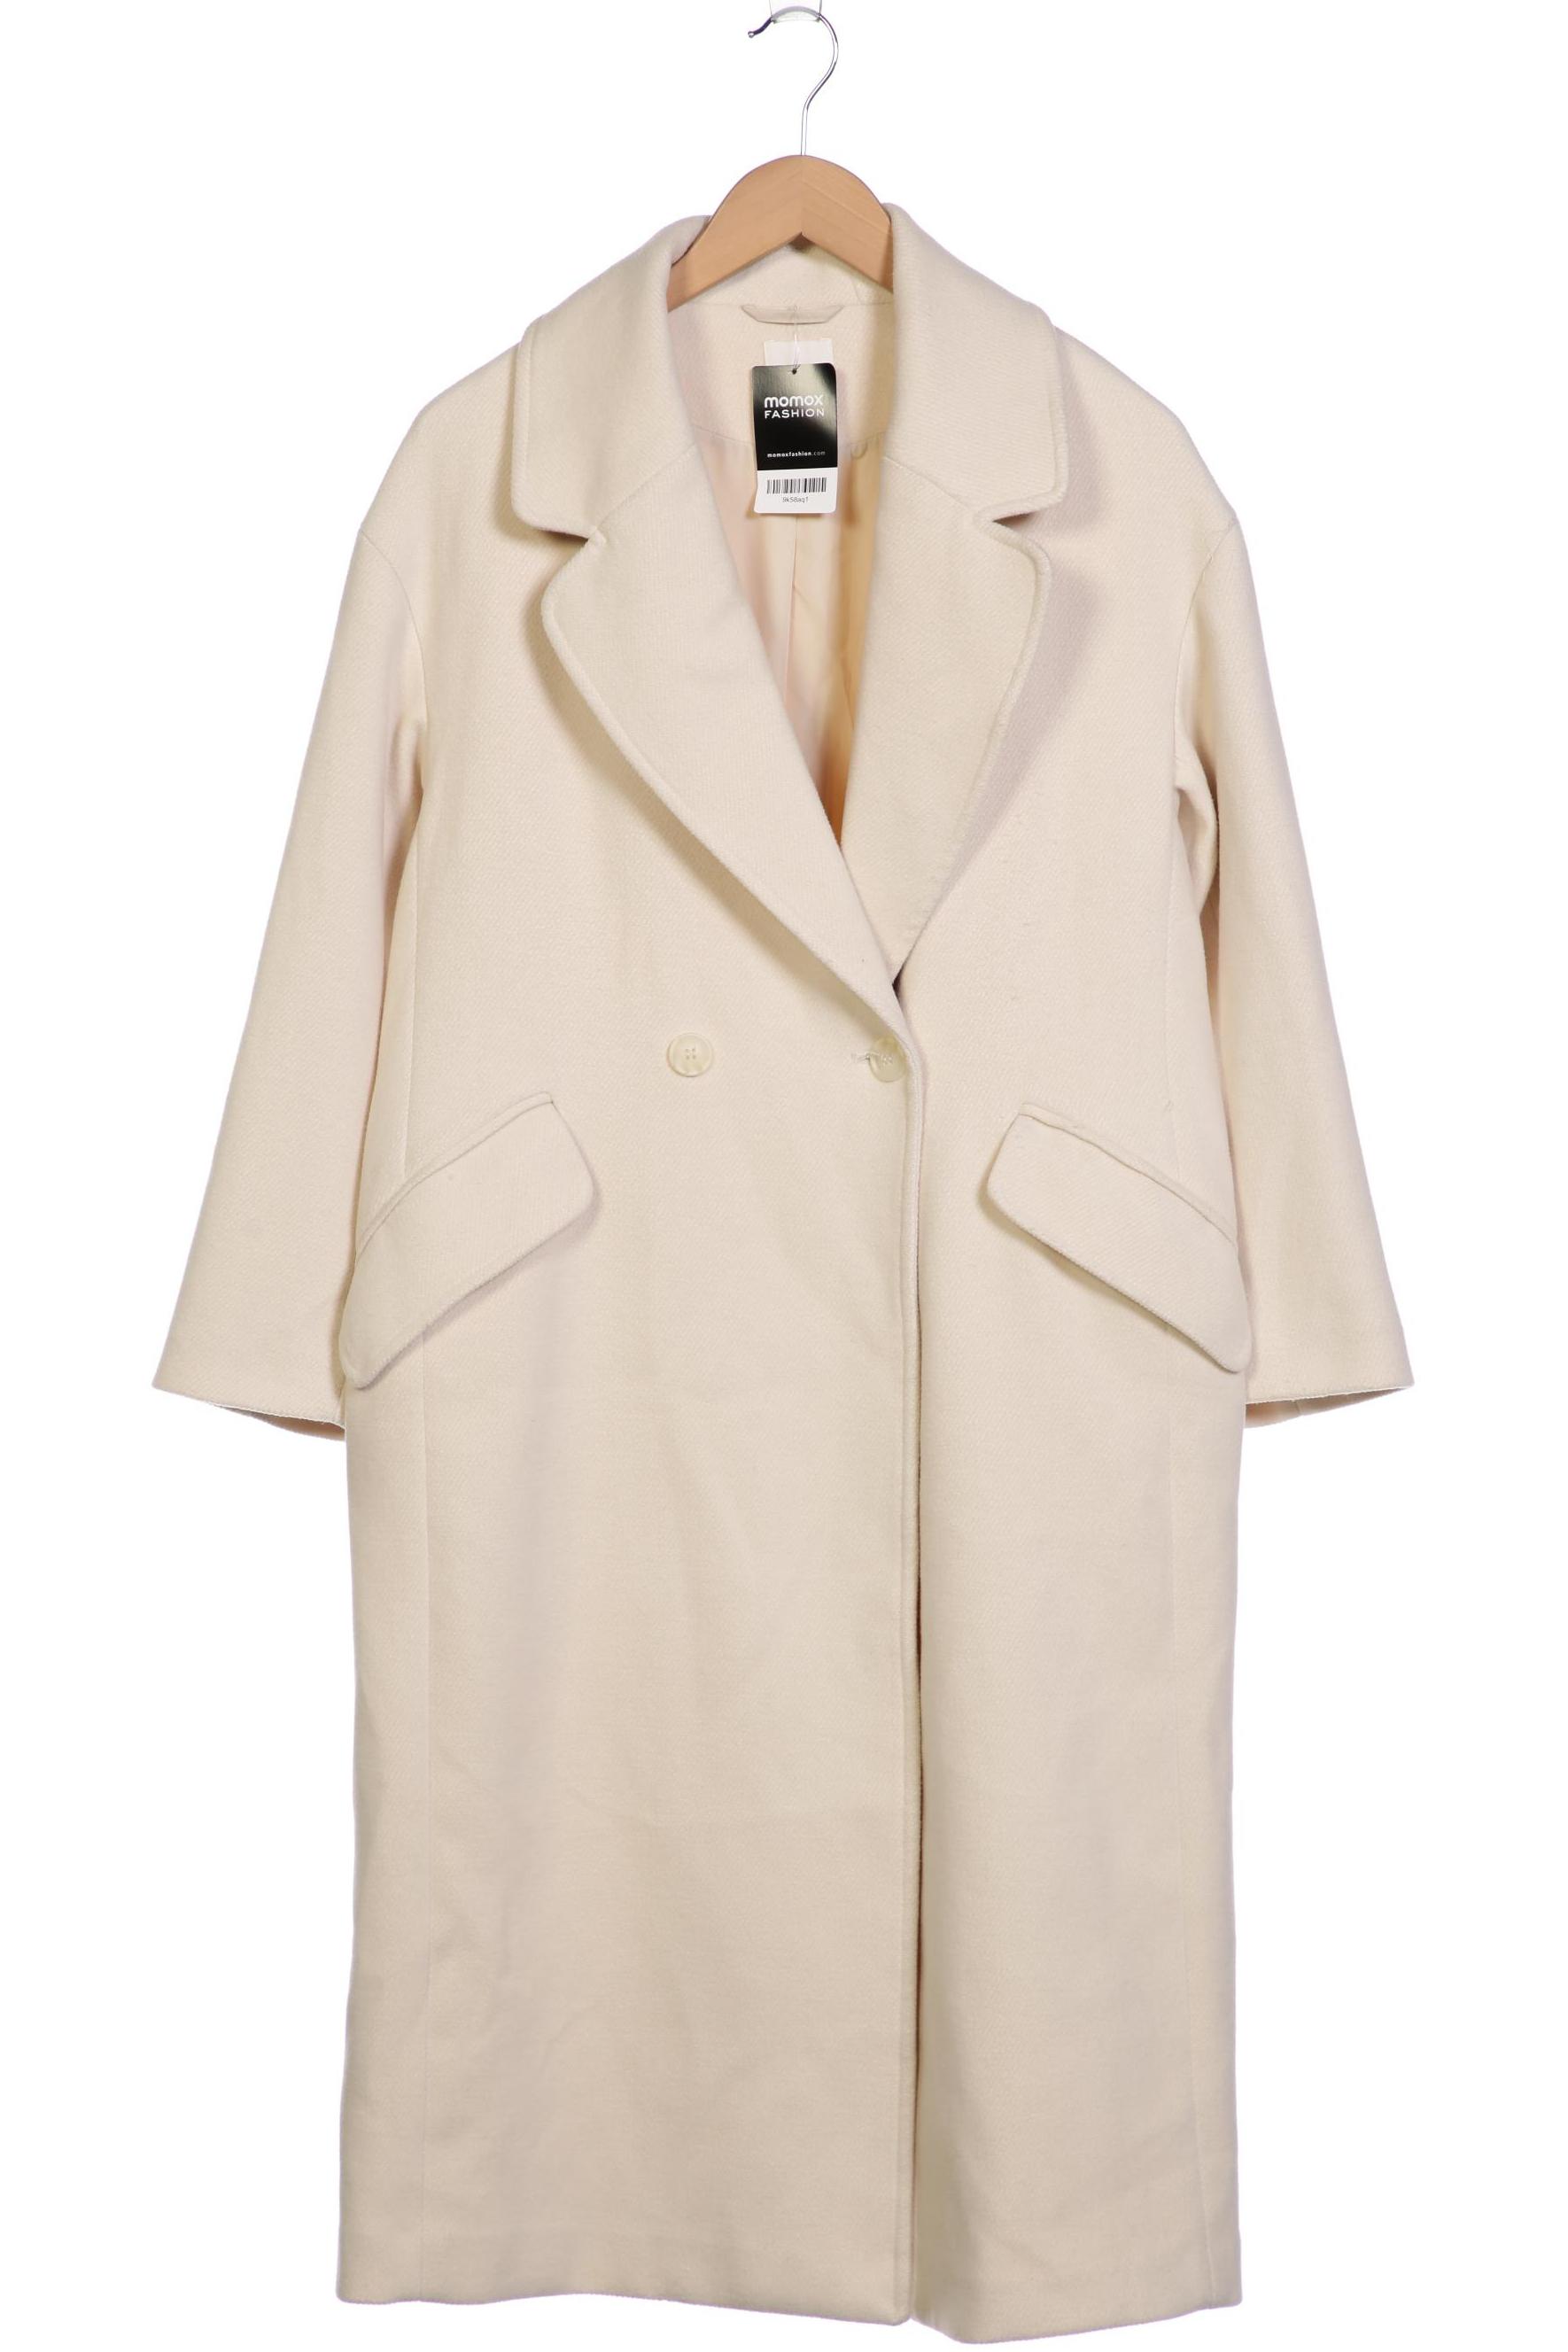 H&M Damen Mantel, cremeweiß, Gr. 36 von H&M